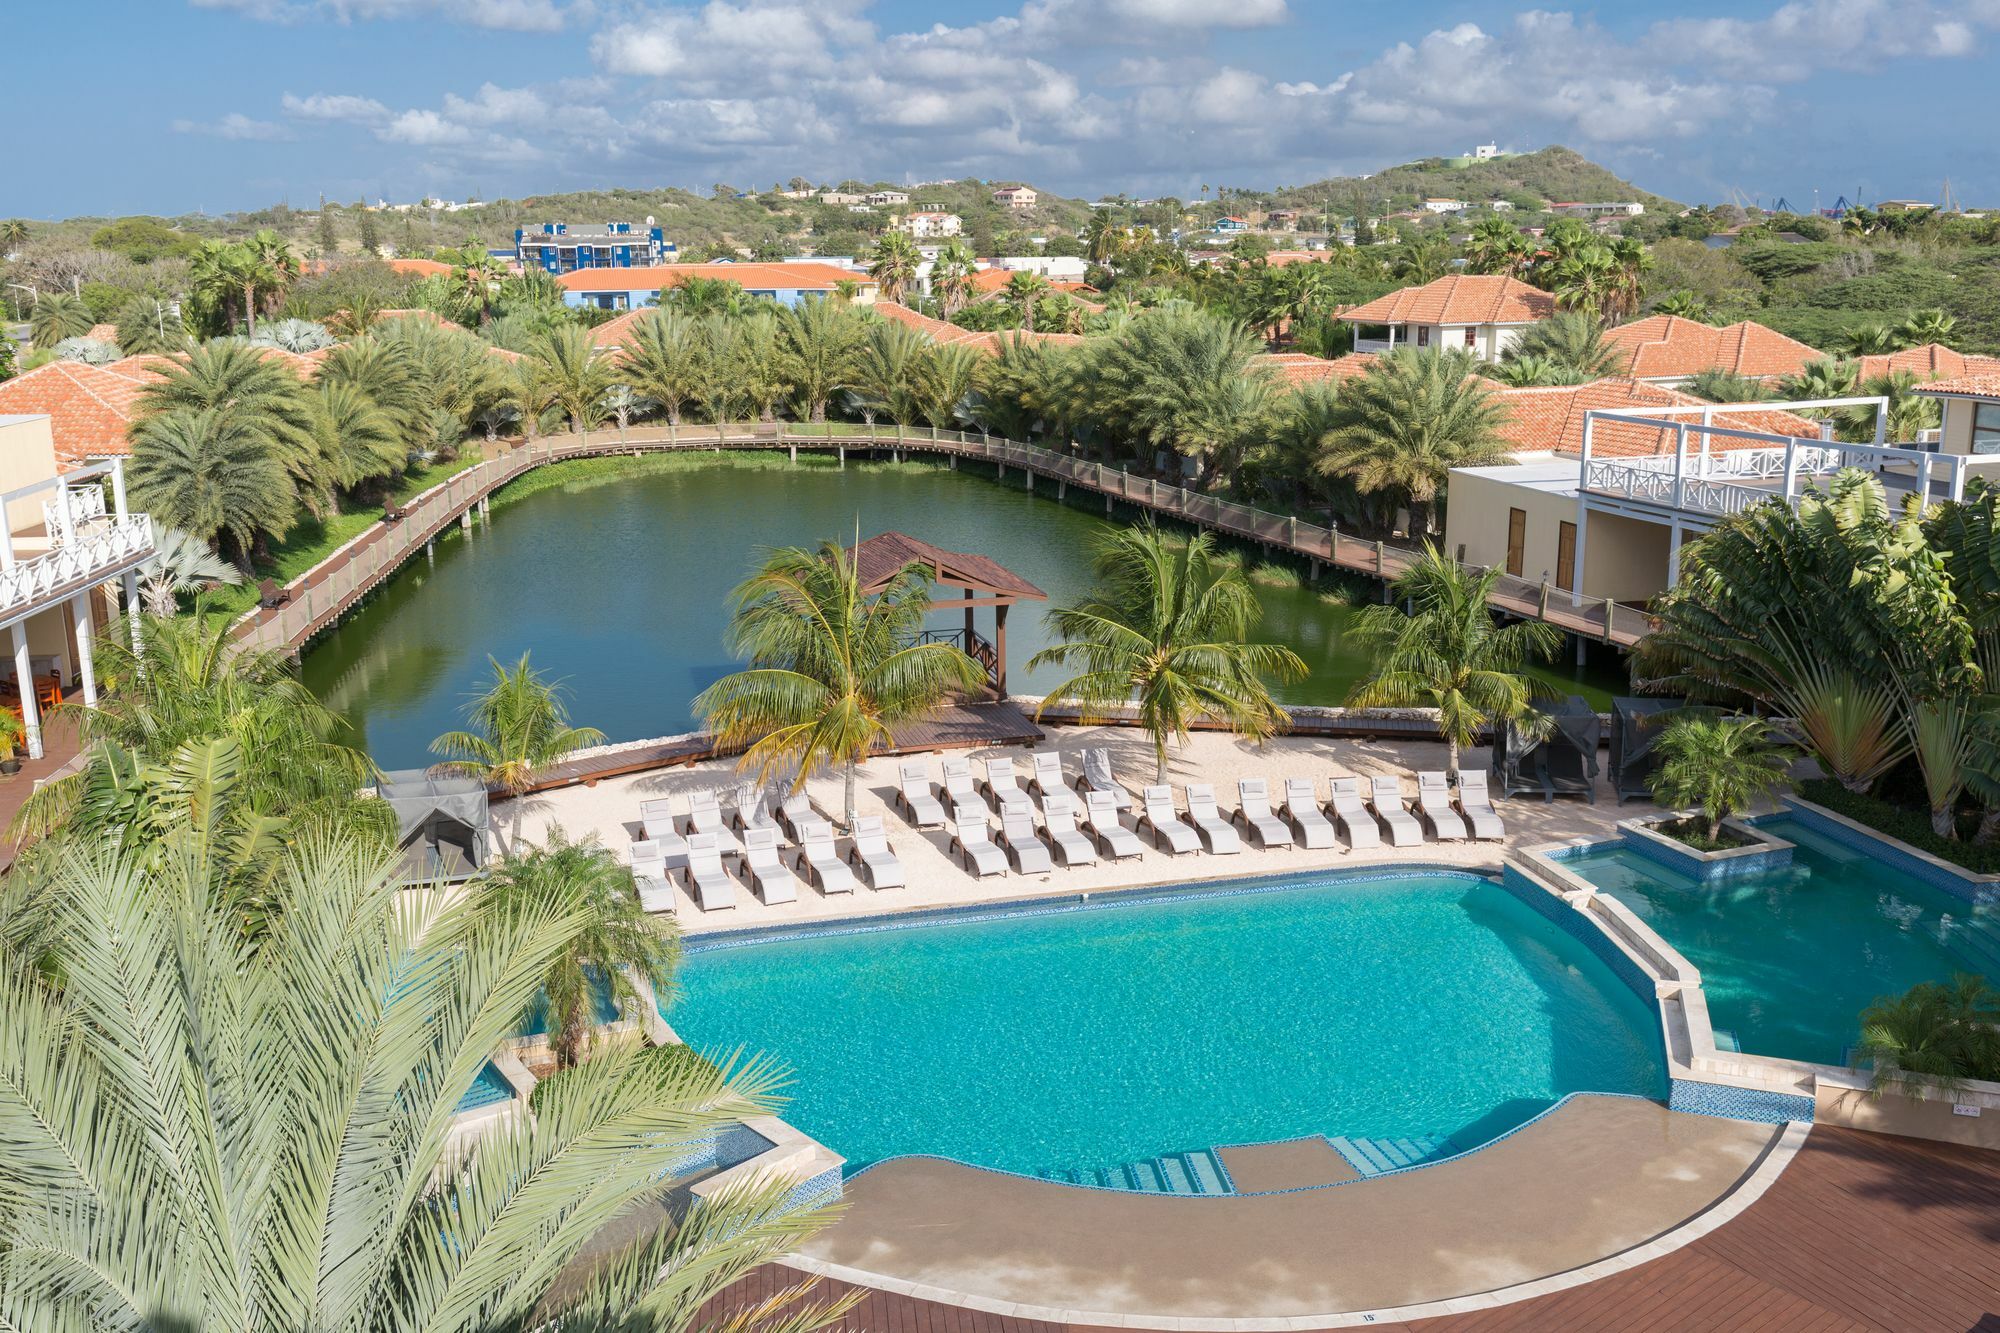 Acoya Curacao Resort, Villas & Spa Willemstad Esterno foto